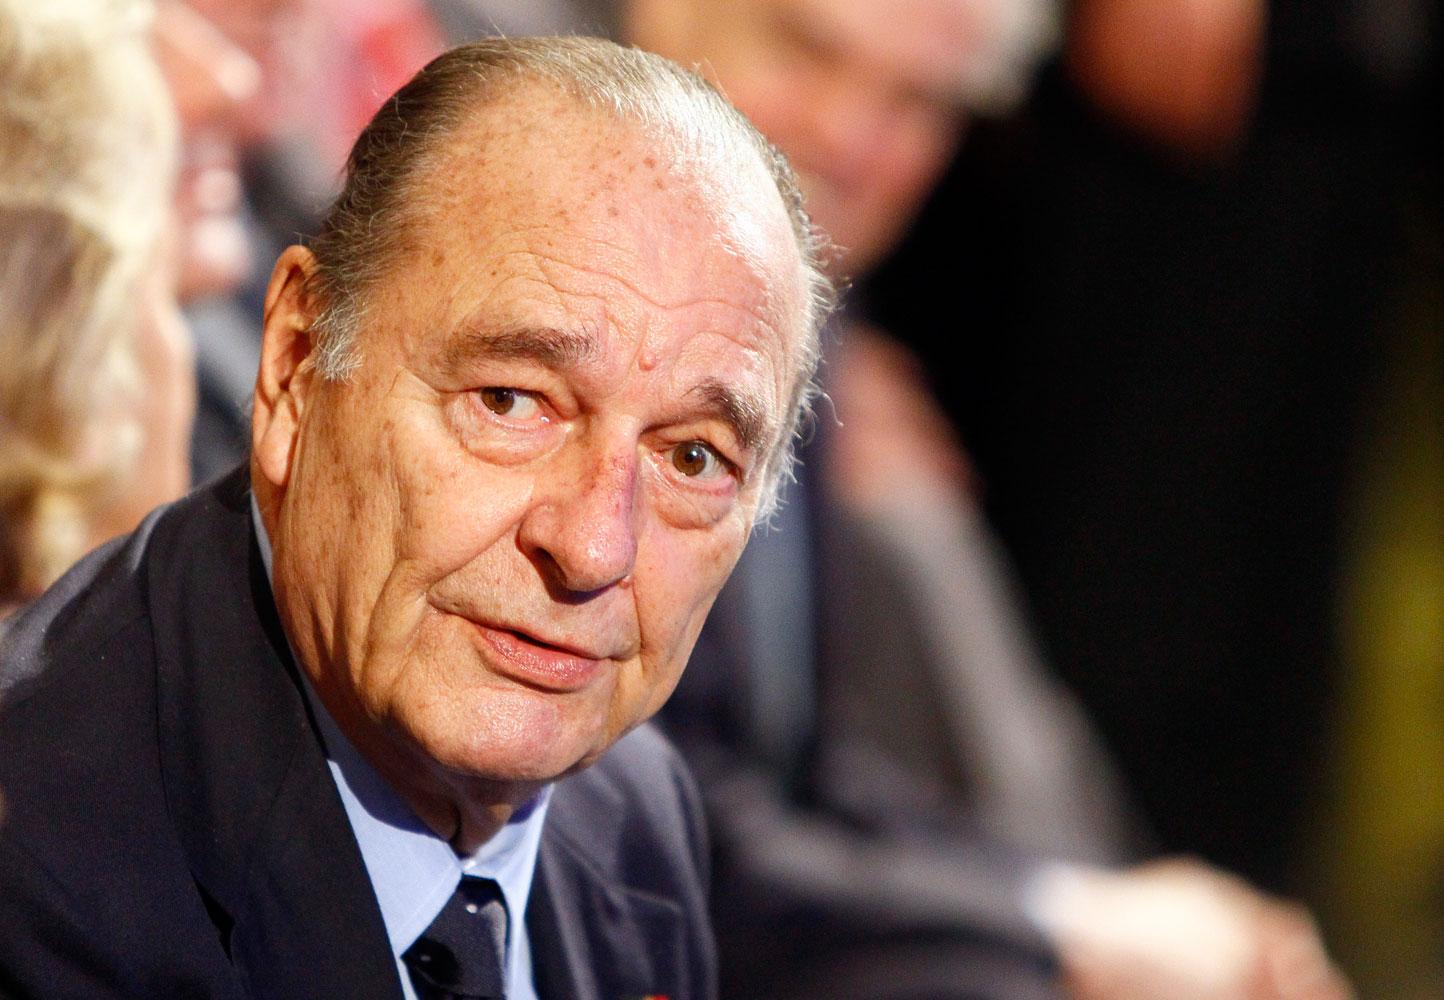 Jacques Chirac var Frankrikes president mellan 1995 och 2007. Dessförinnan var han 1977 till 1995 Paris borgmästare.